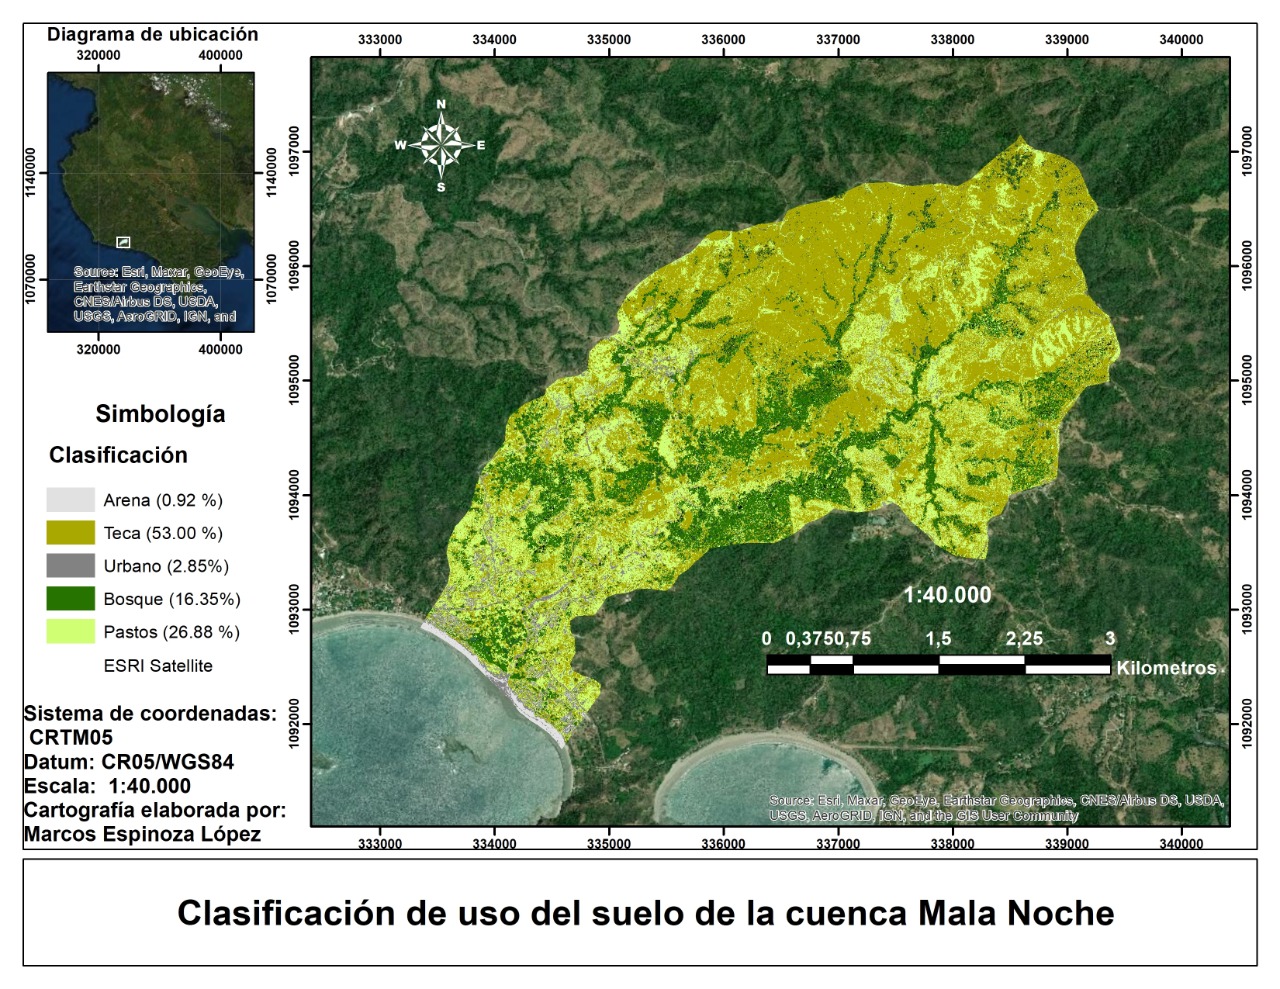 Land use map of Mala Noche Basin